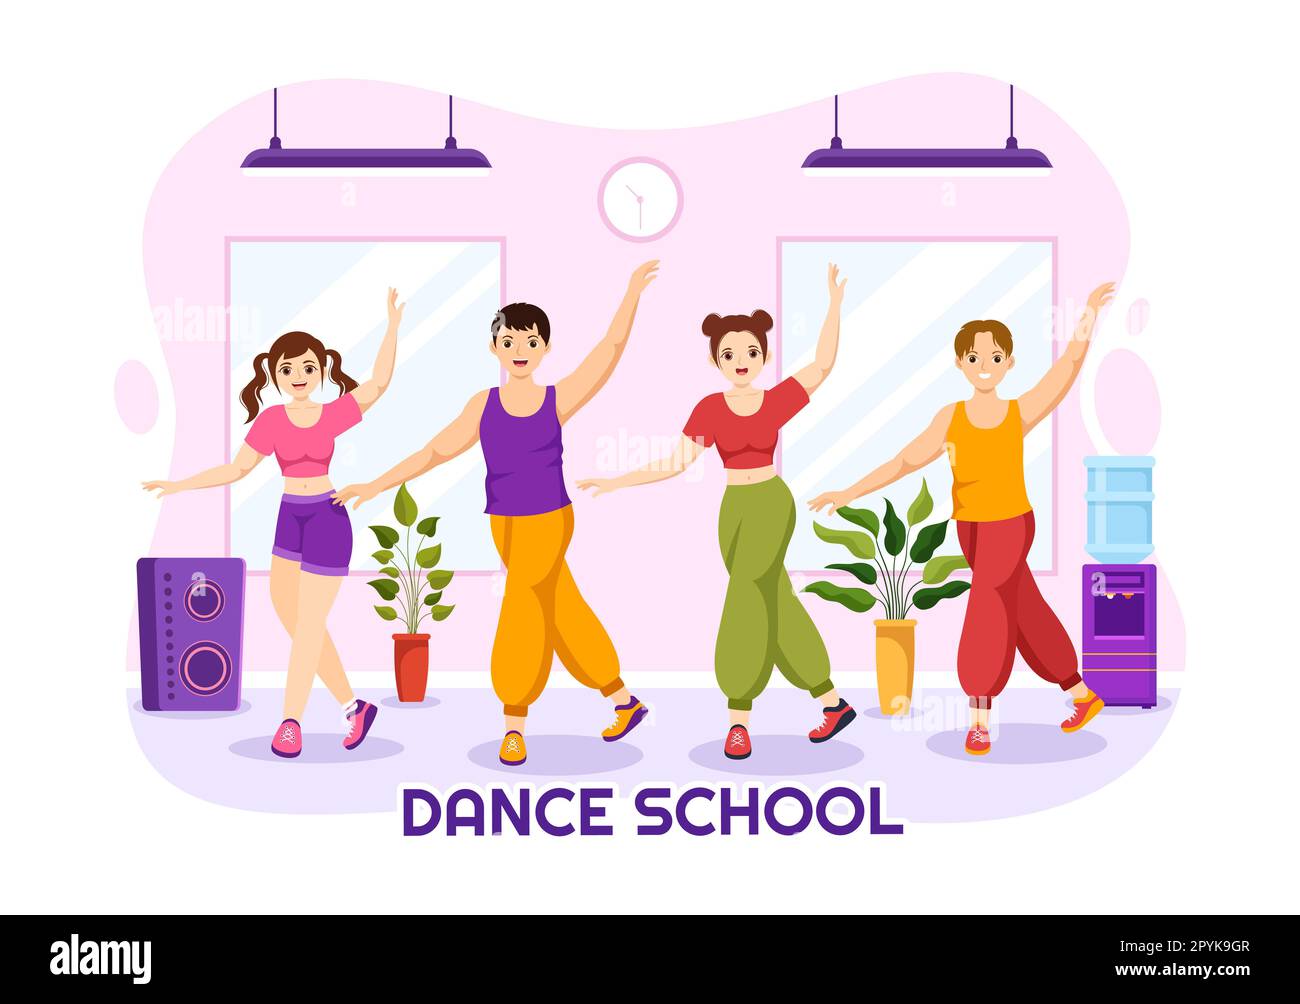 École de danse Illustration des personnes dansant ou choreography avec l'équipement de musique en studio en Flat Cartoon modèles de page d'arrivée dessinés à la main Banque D'Images